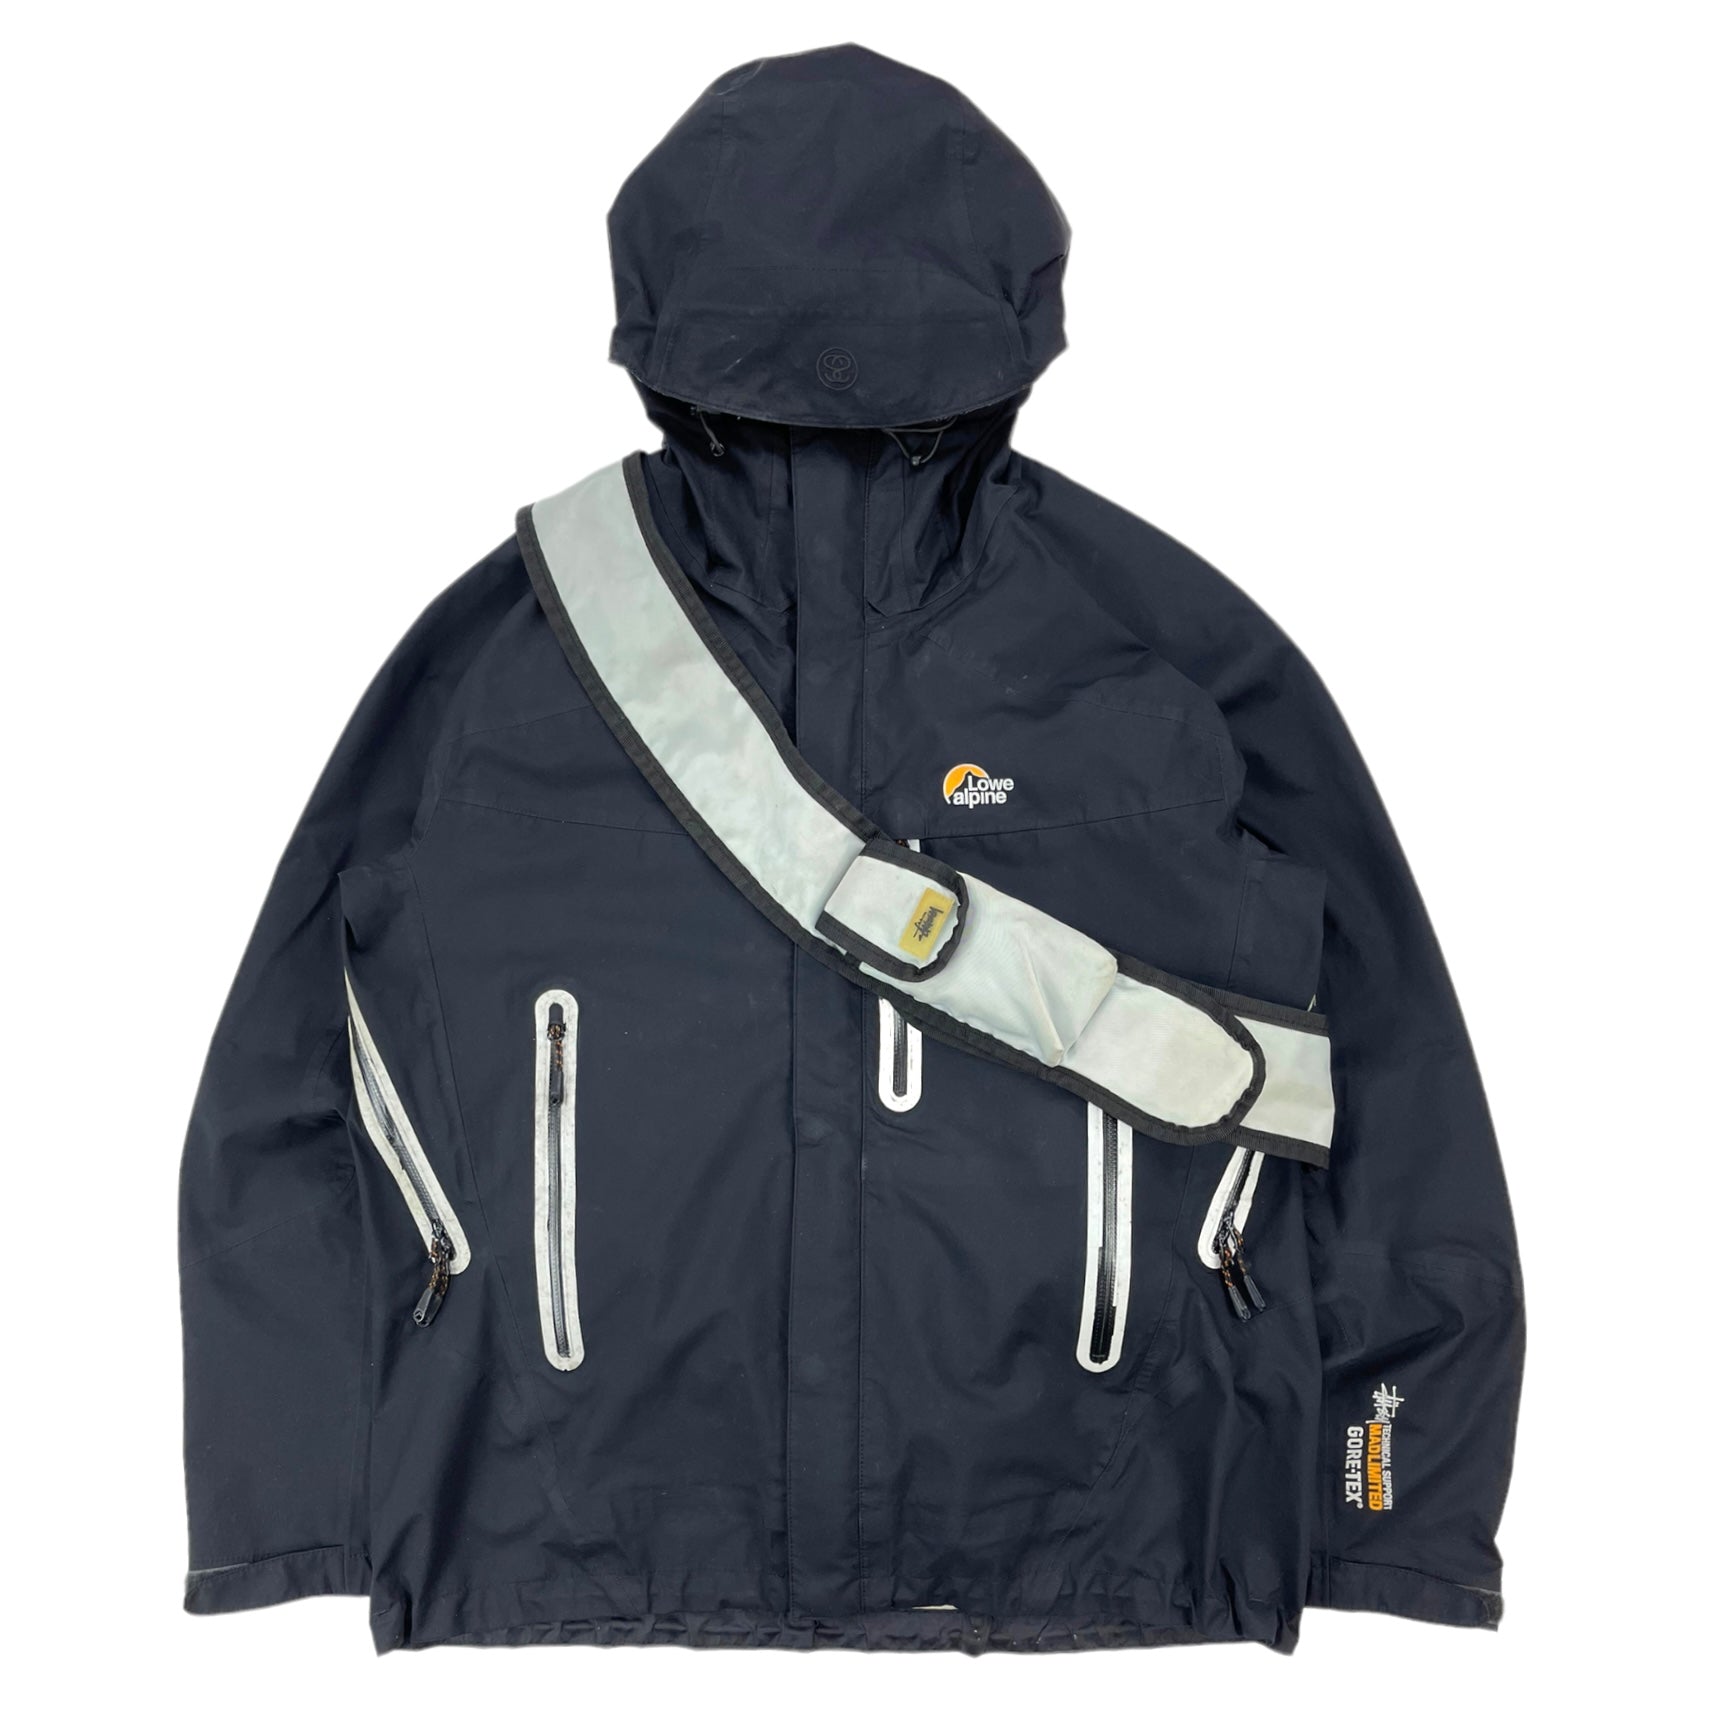 2011 Stussy x Lowe Alpine Gore-tex jacket